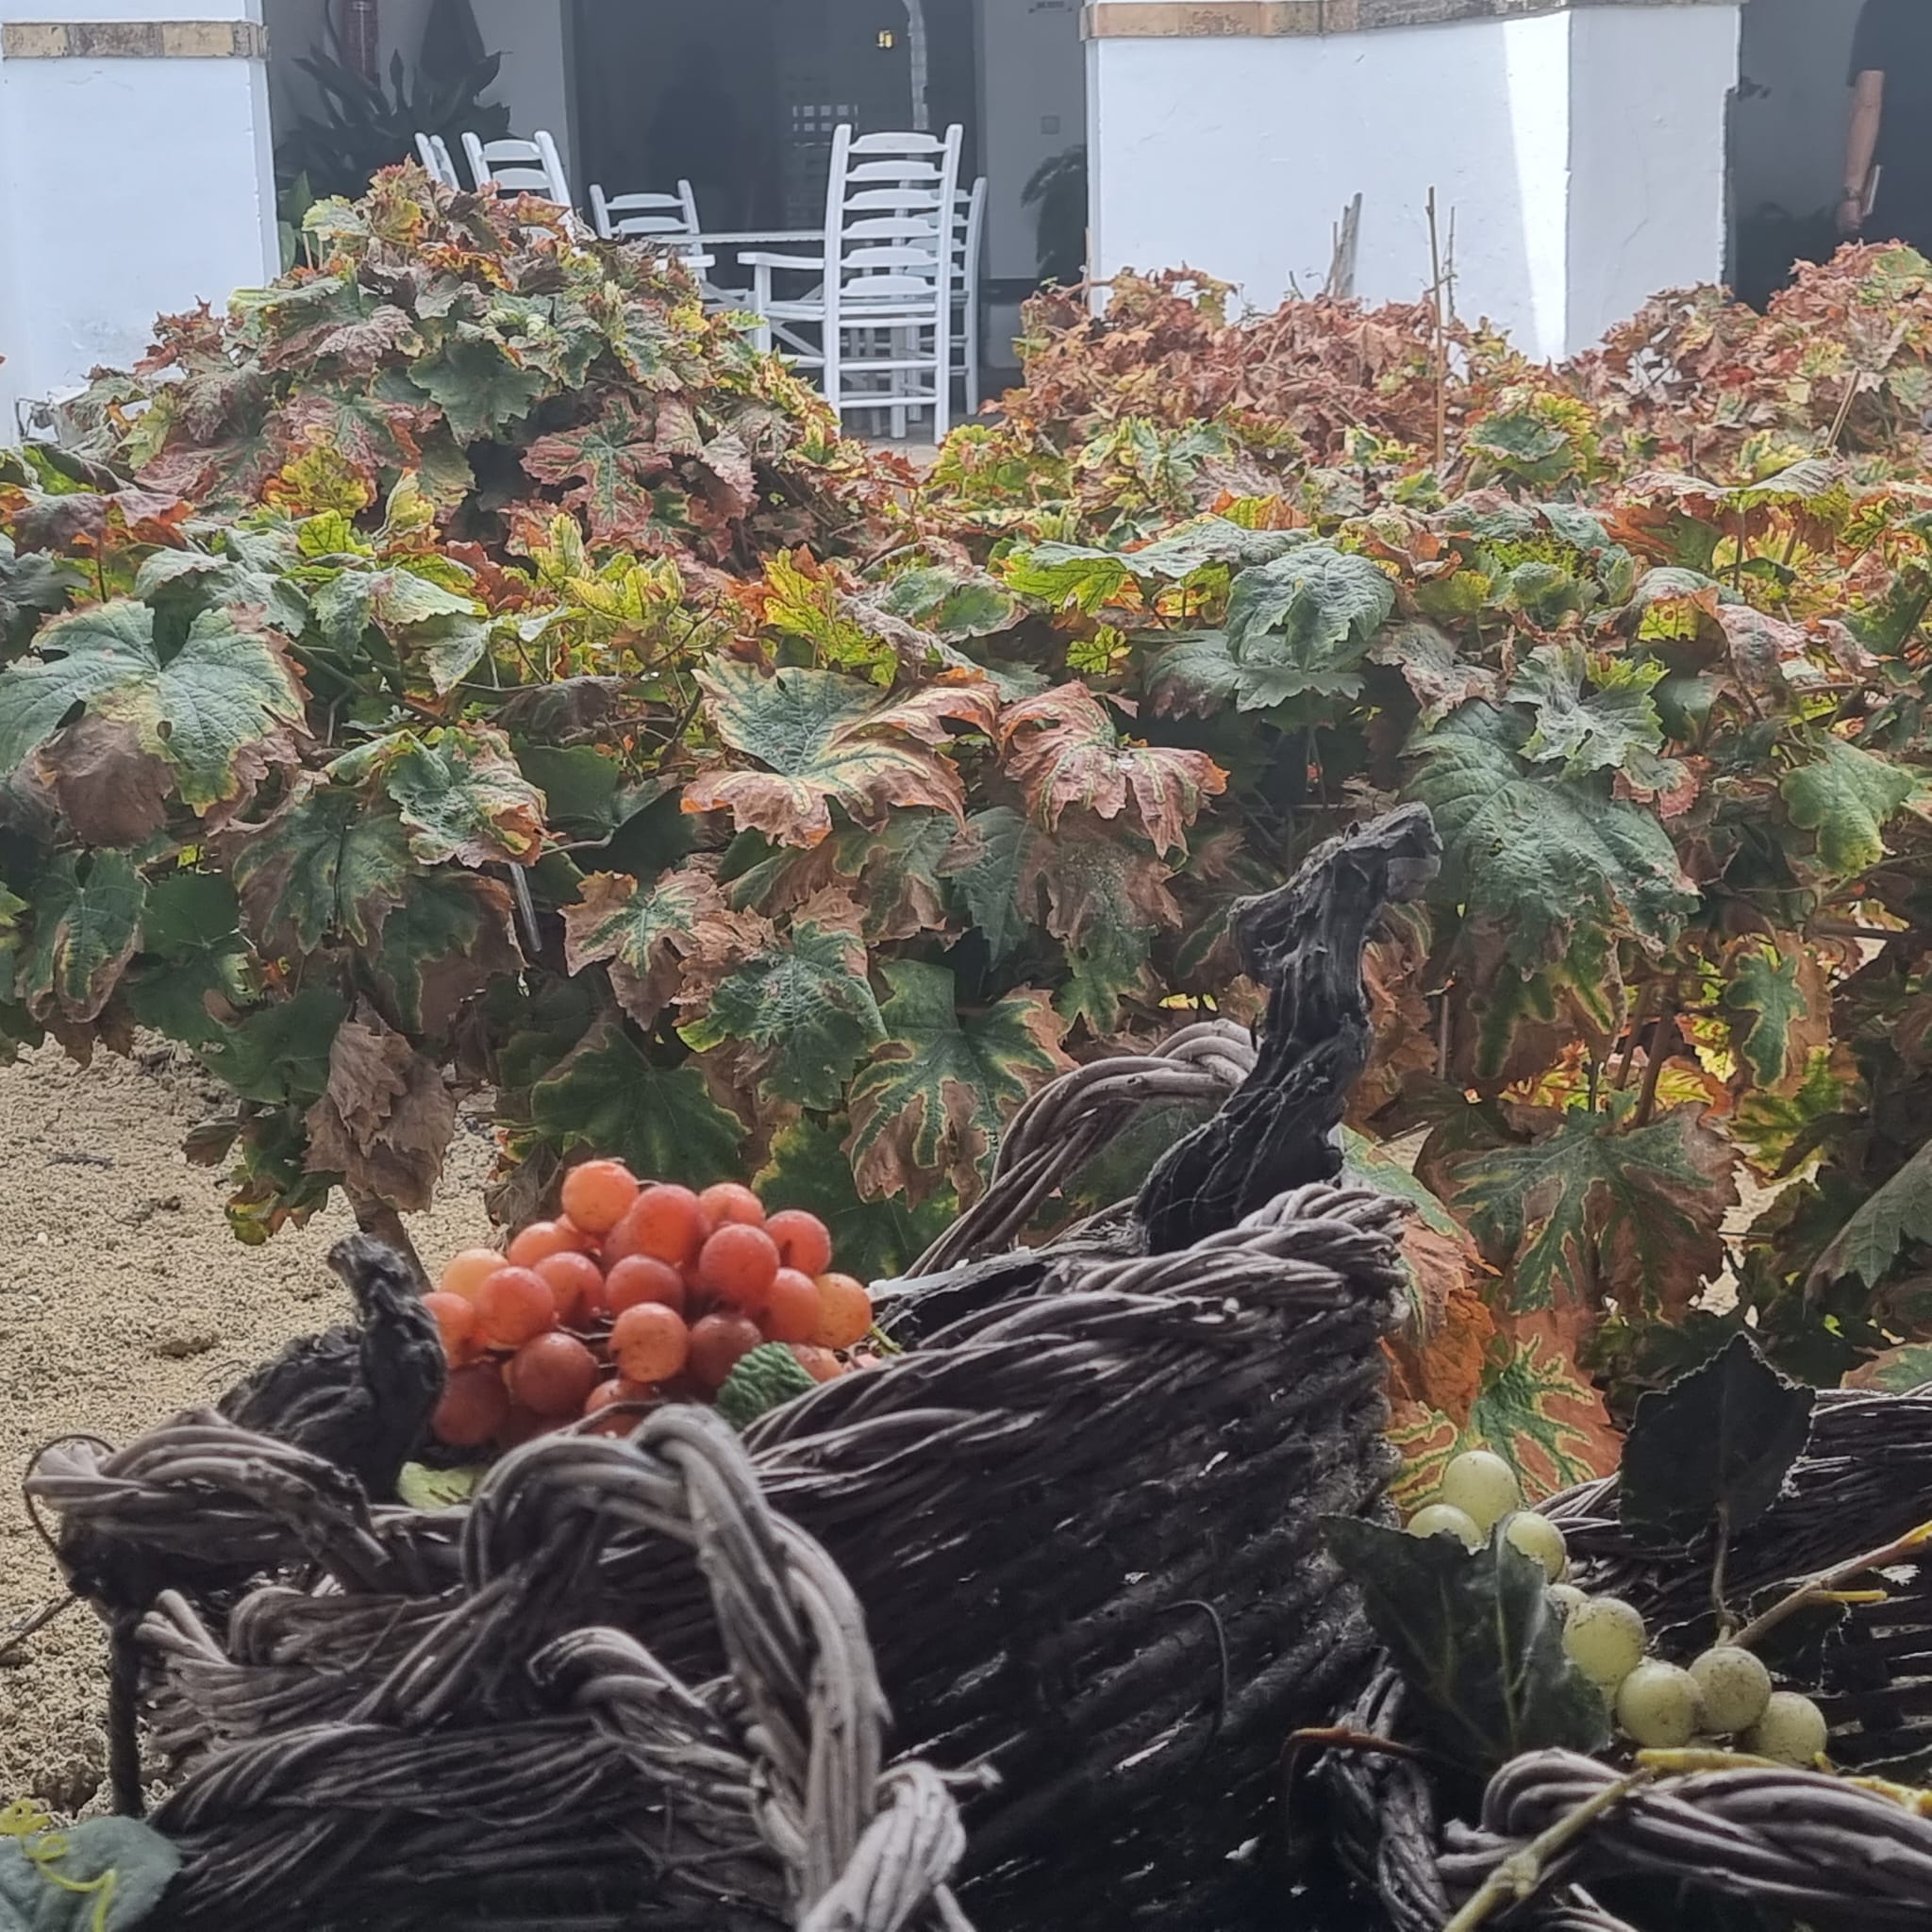 Harvest in Sanlúcar. Source: MU